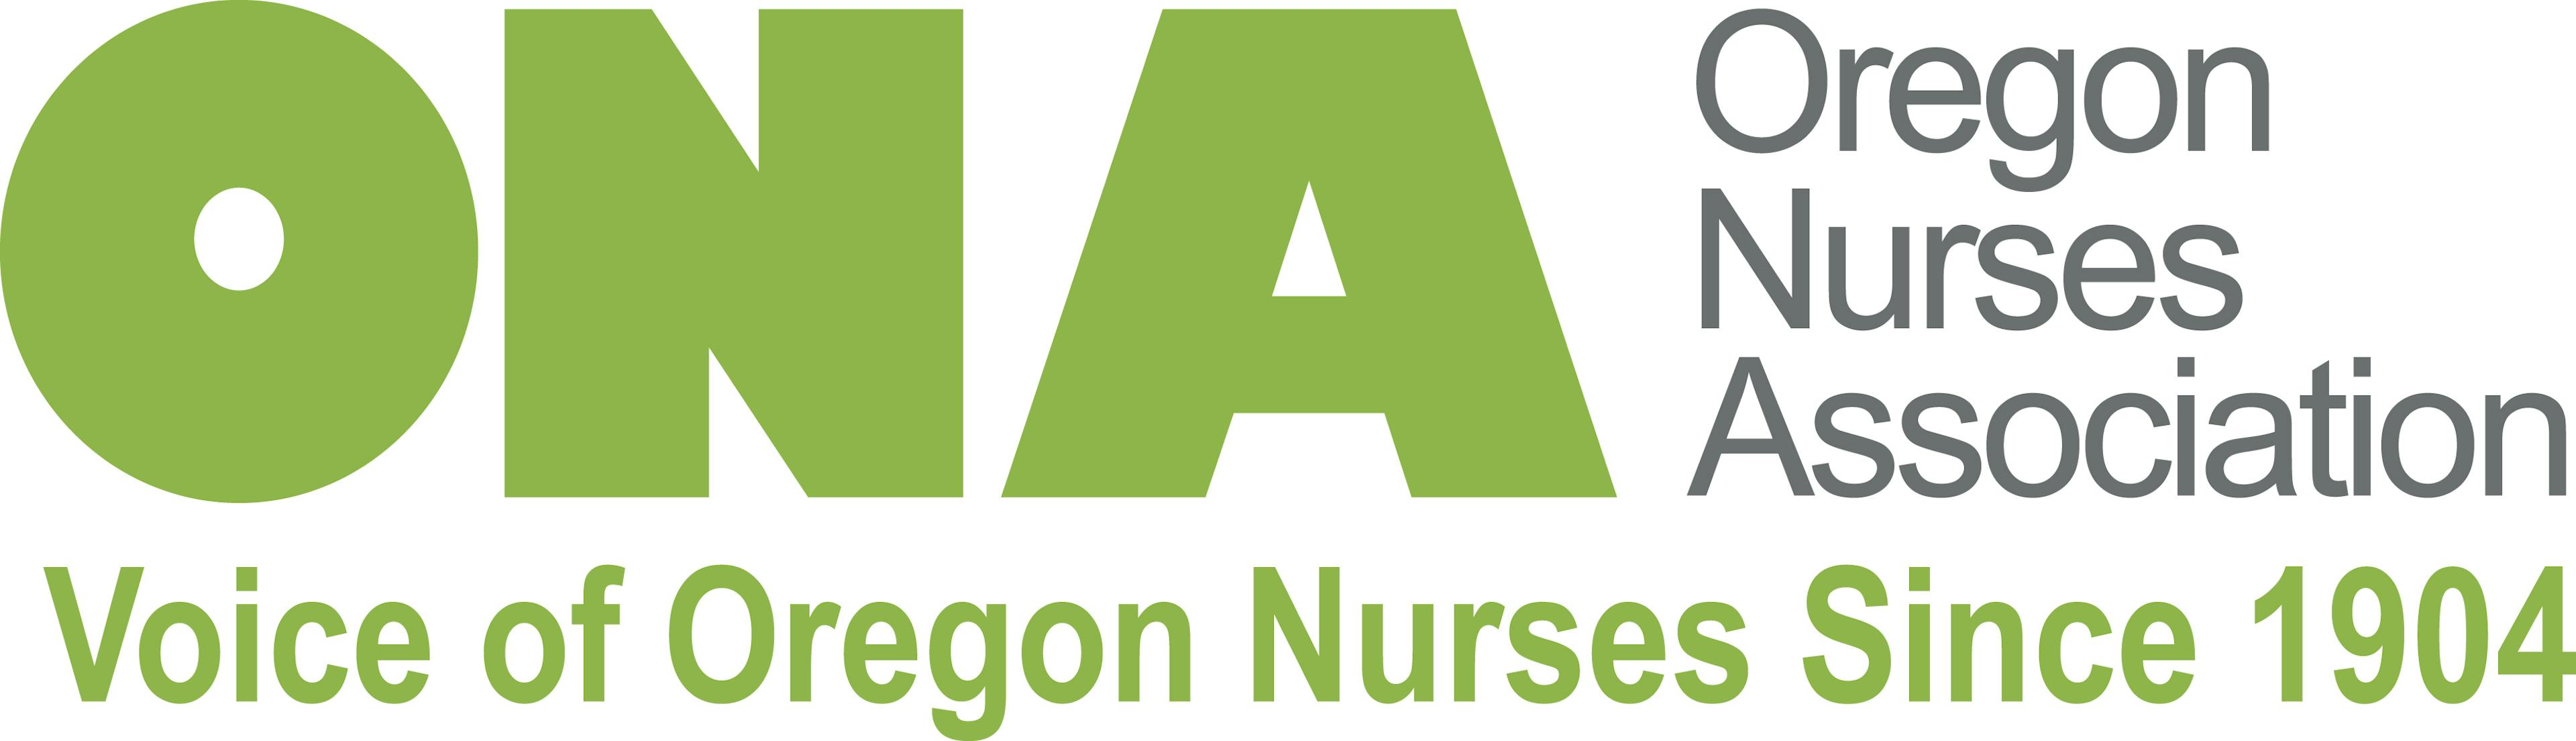 ONA - Oregon Nurses Association - Voice of Oregon Nurses Since 1904